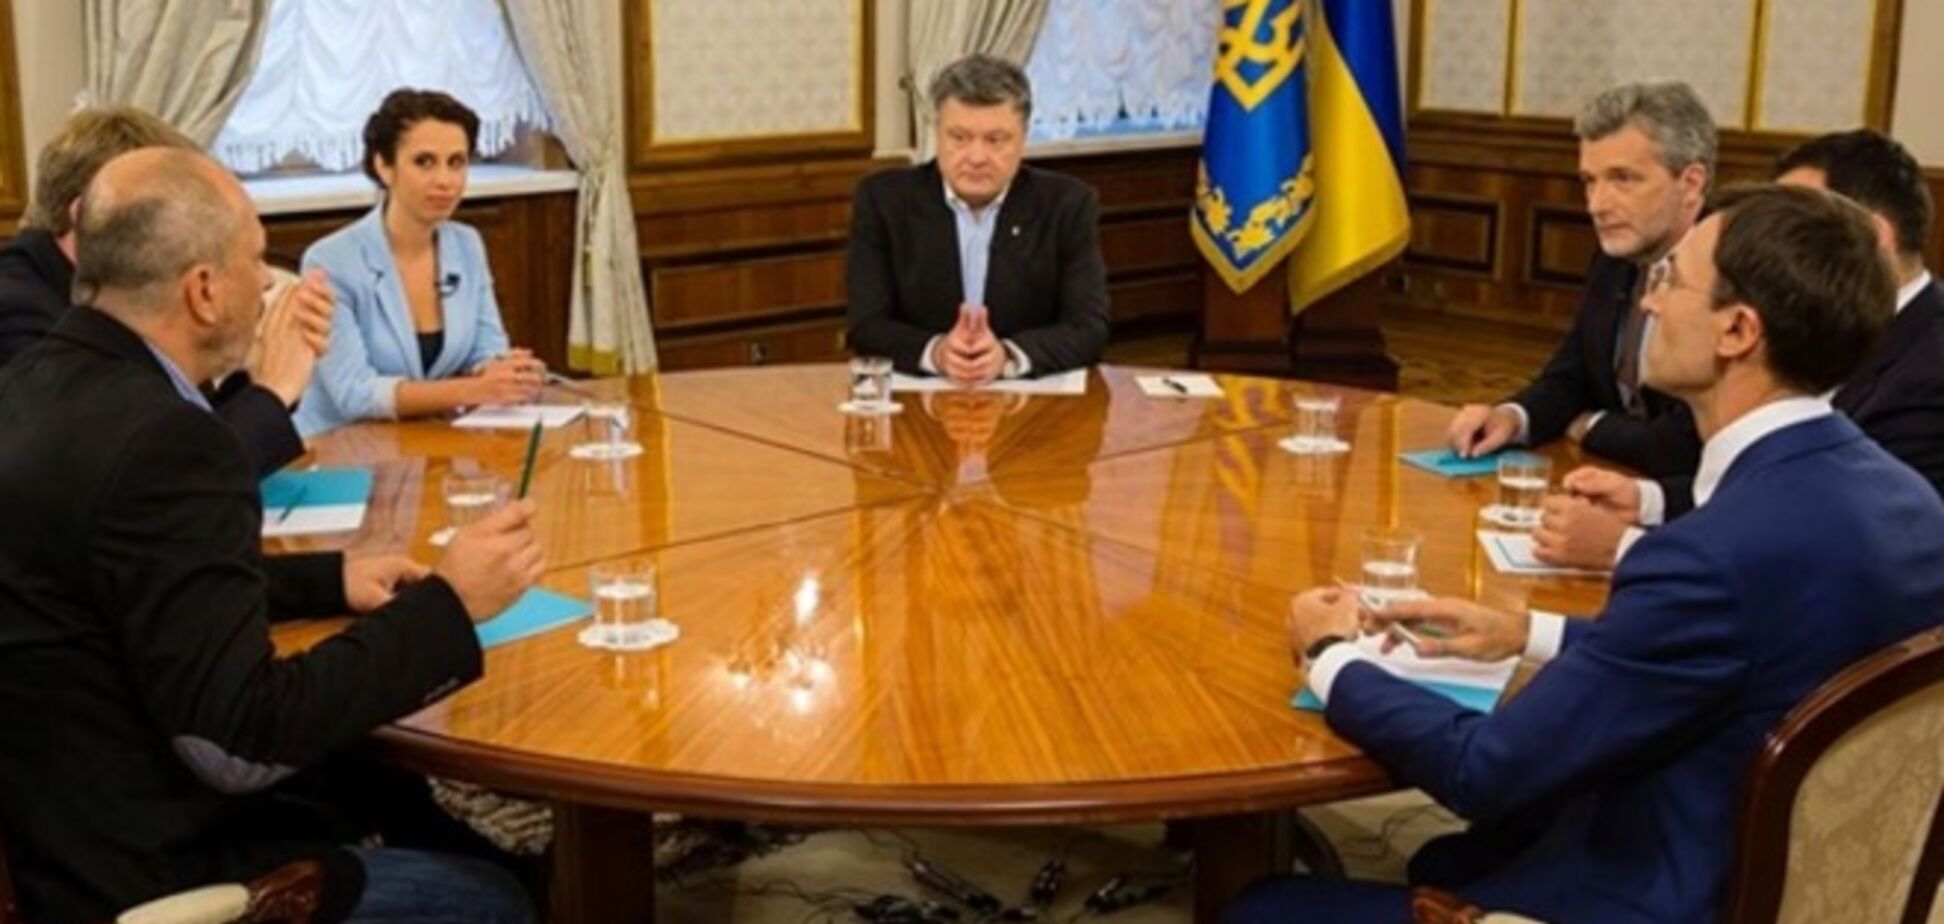 В субботу Порошенко расскажет СМИ, о чем говорил с Путиным